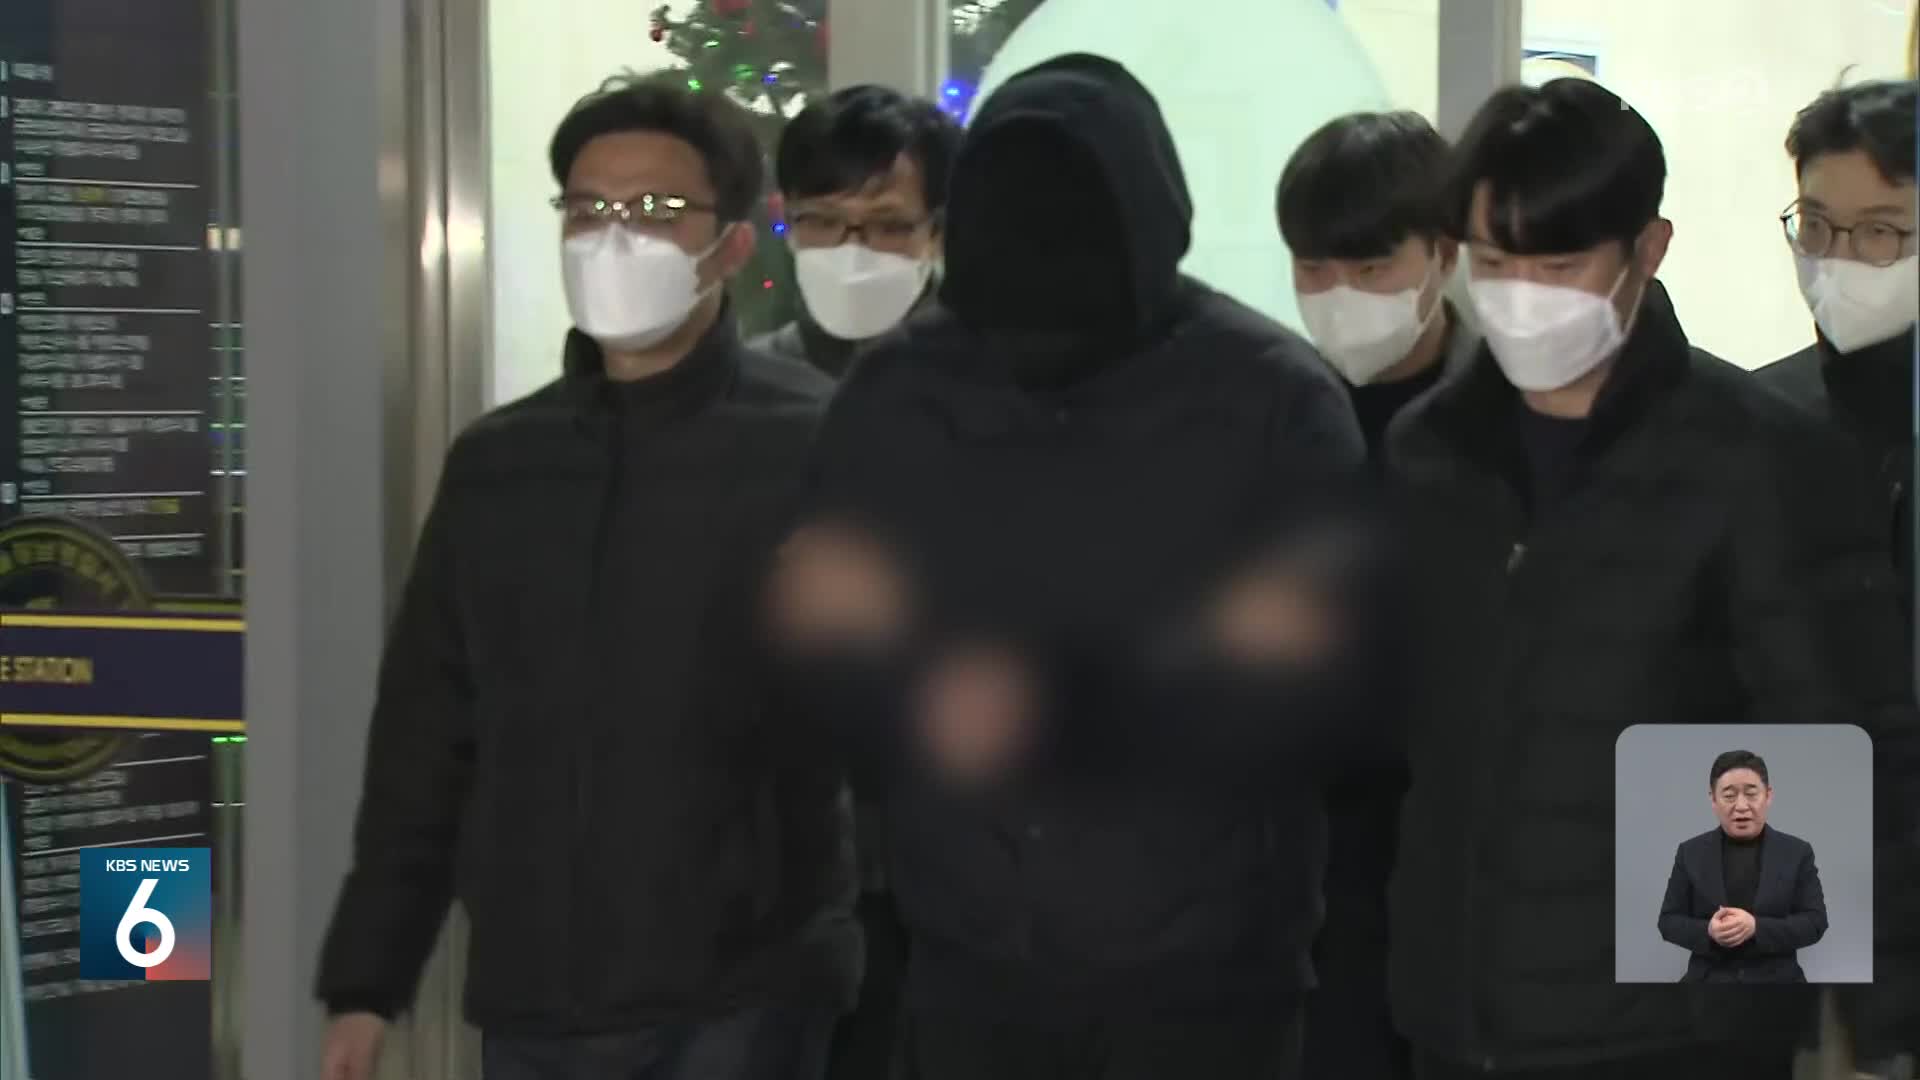 ‘강남 스쿨존 사망사고’ 운전자, 징역 5년형 확정